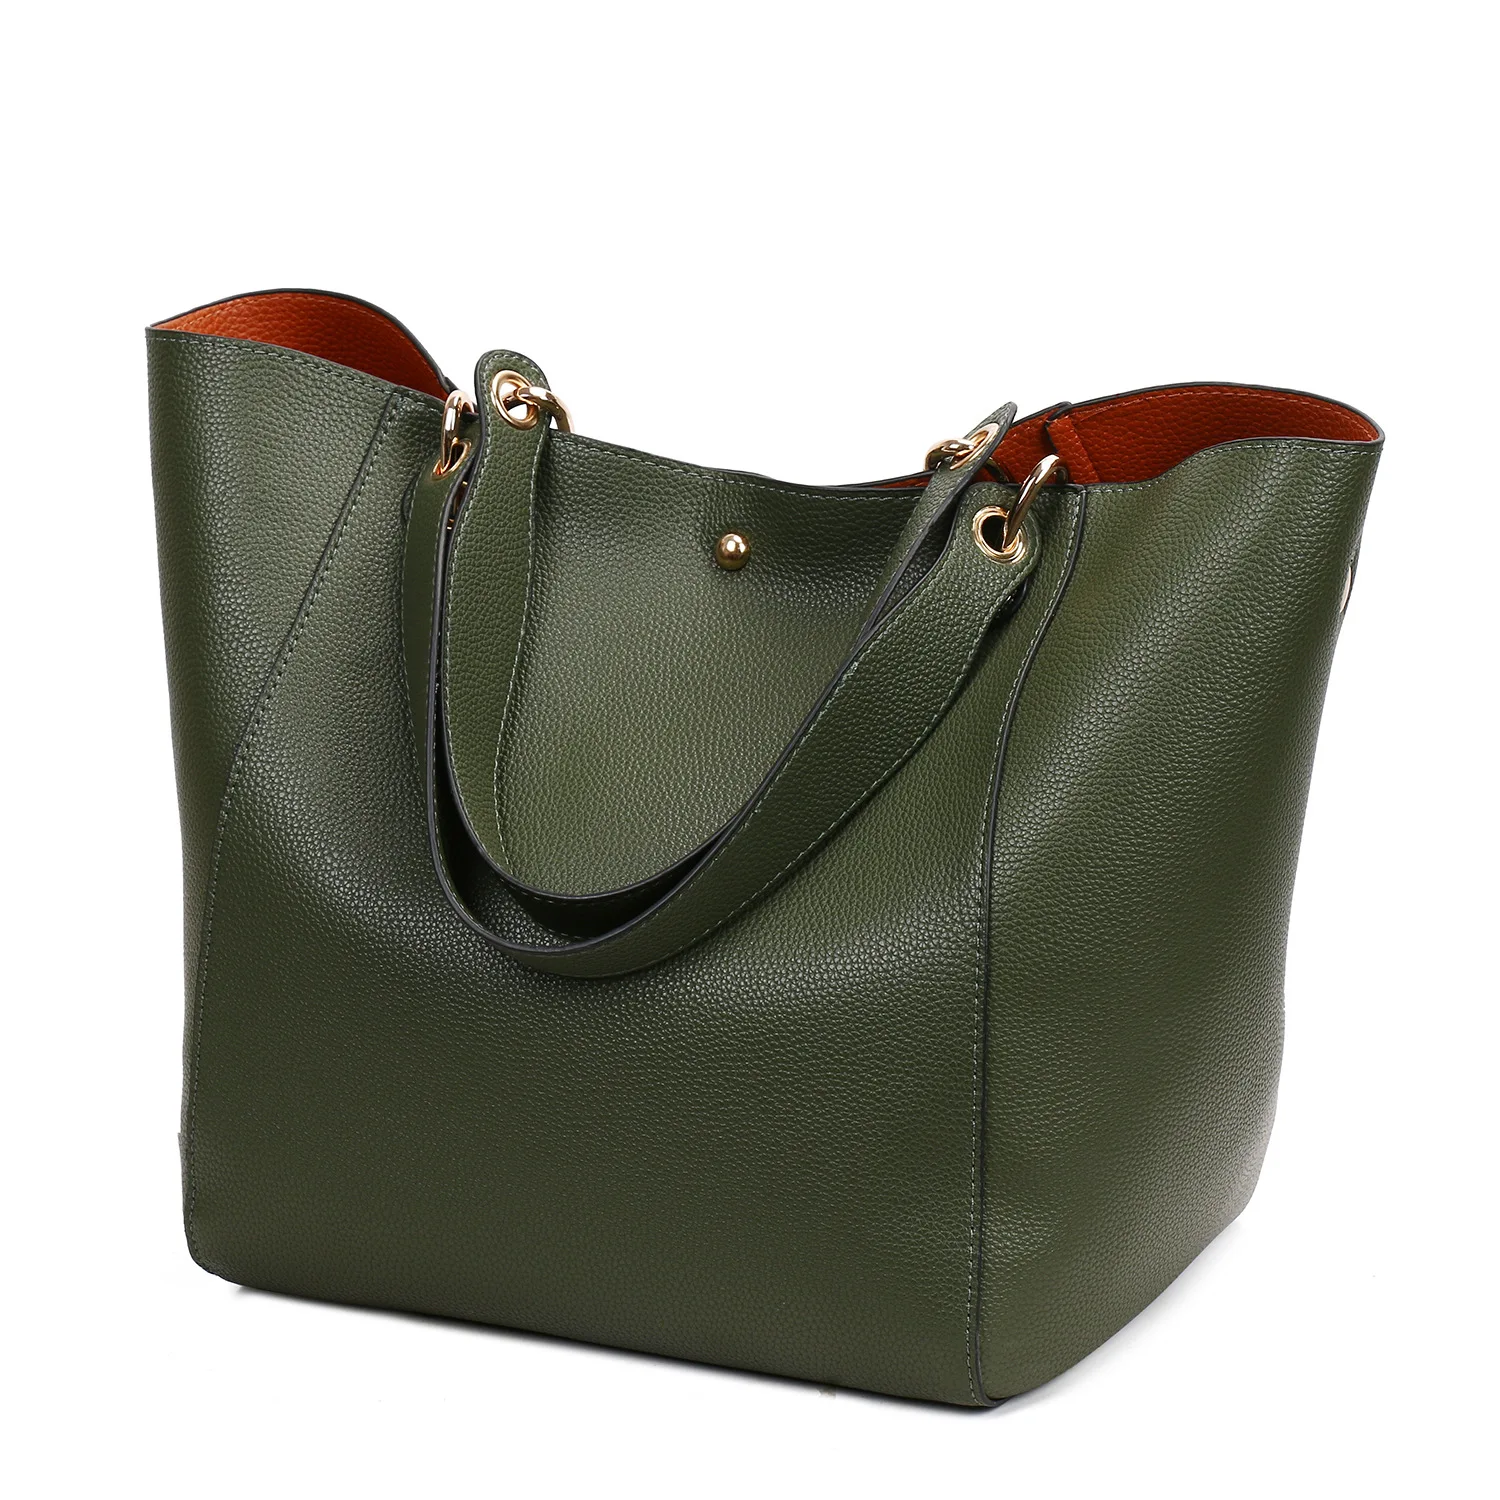 BERAGHINI из искусственной кожи в форме ведерка композитные сумки известный бренд дизайнерские женские сумки высокого качества сумка через плечо - Цвет: Армейский зеленый